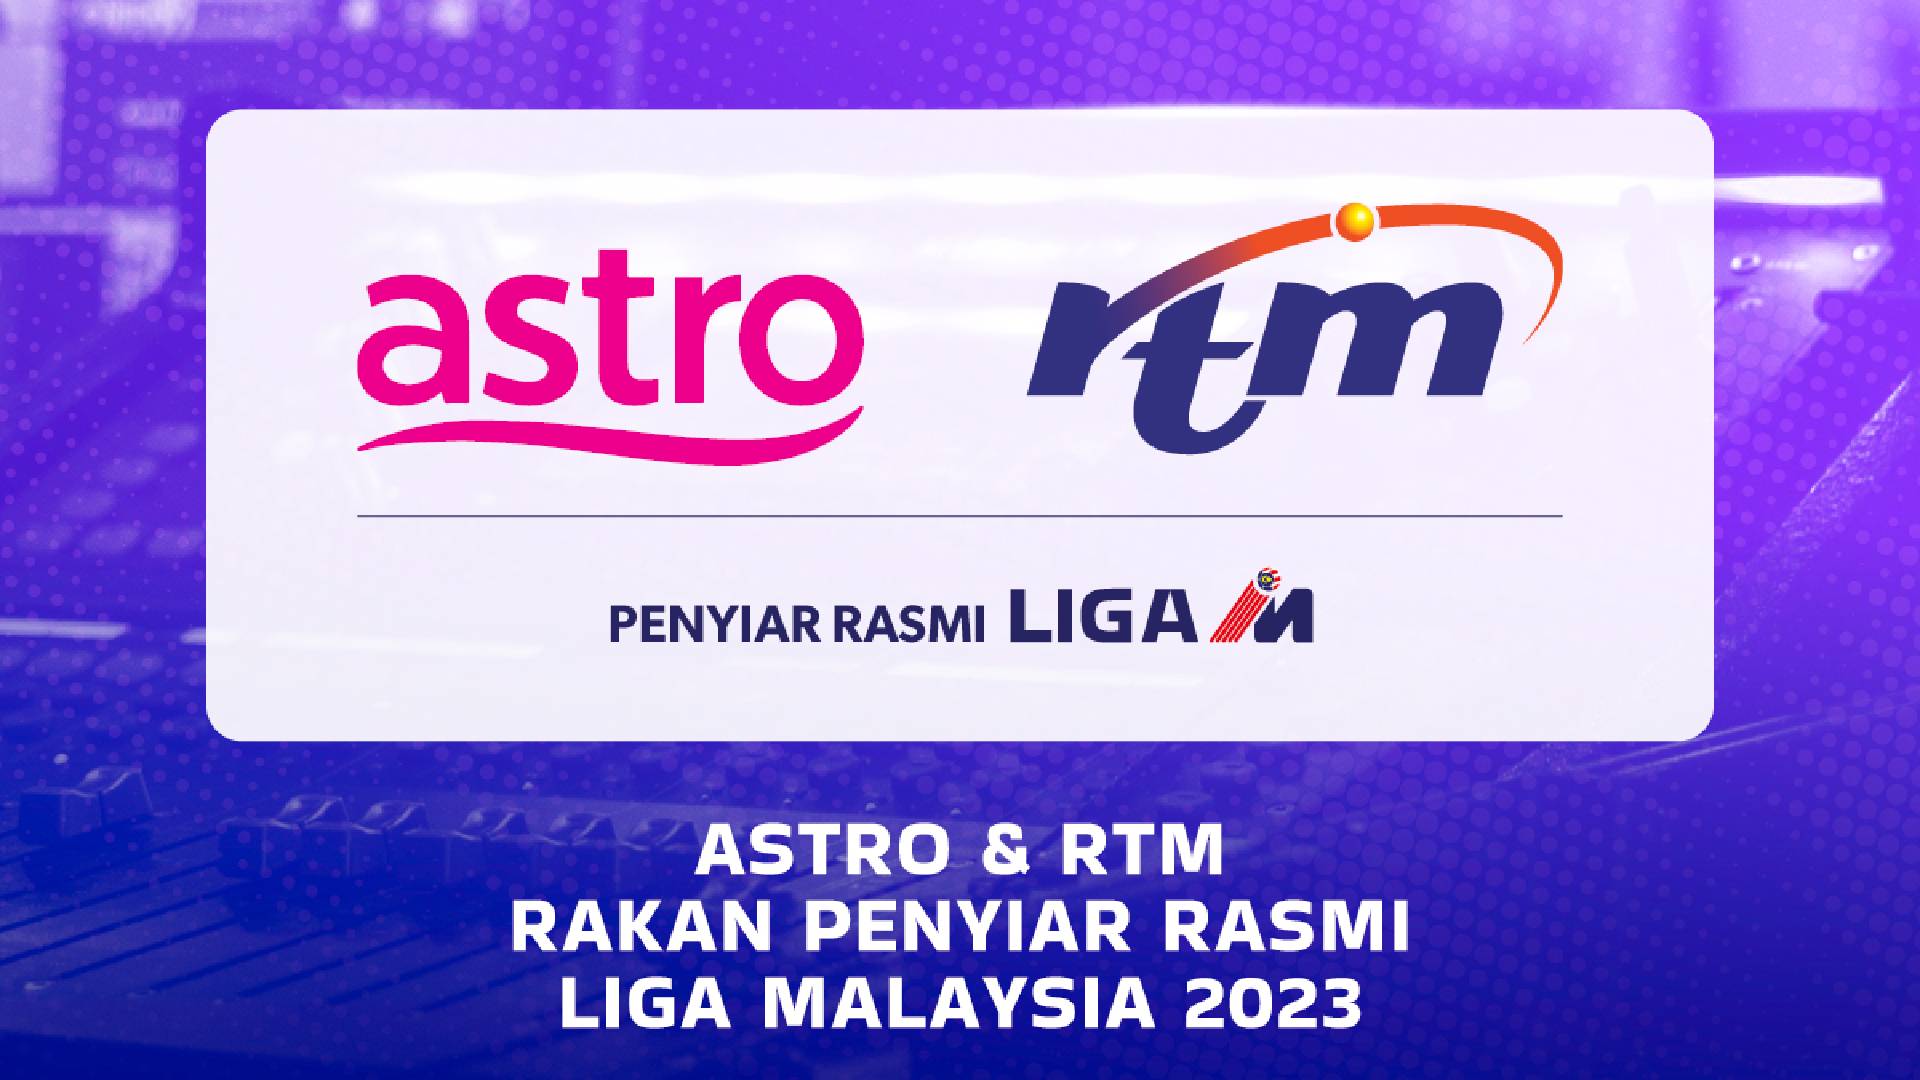 Astro RTM MFL Rasmi: Astro & RTM Penyiar Rasmi Liga-M 2023